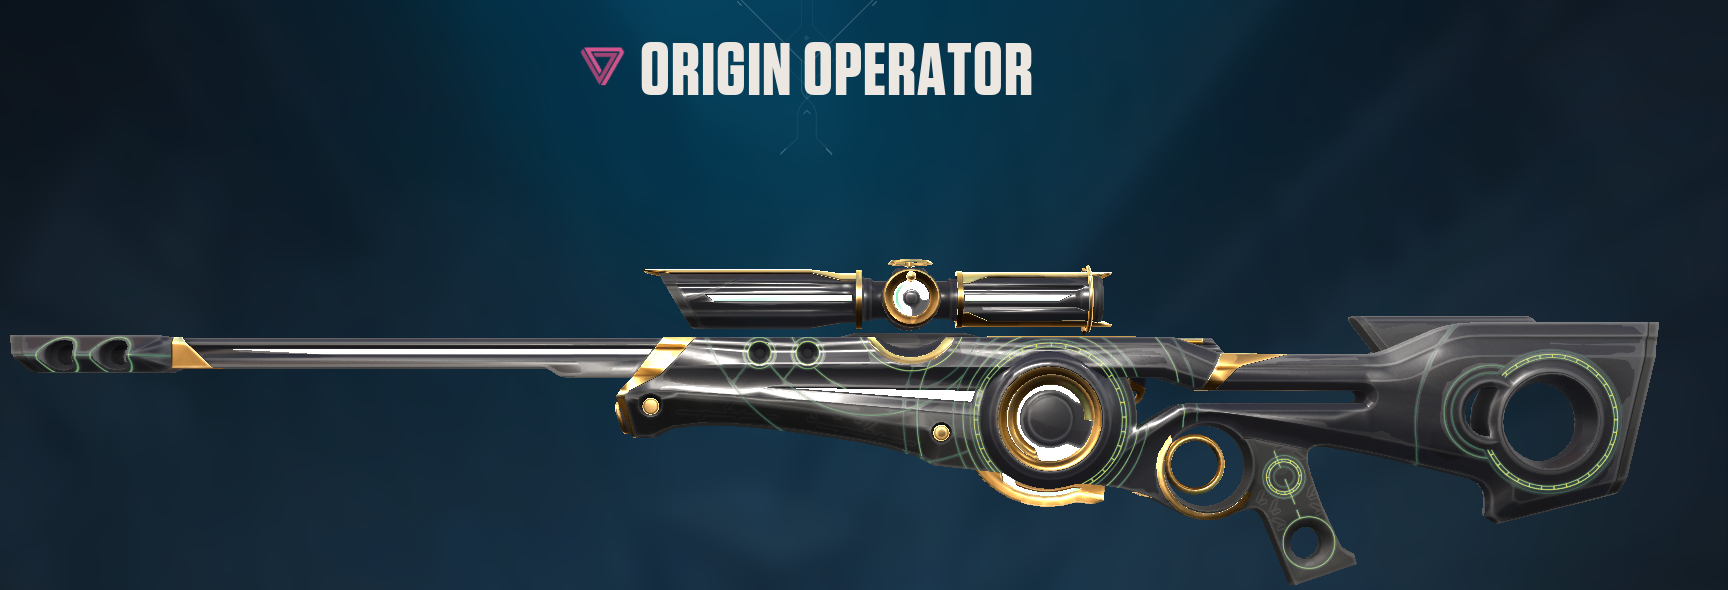 Origin Operator. Credit: Riot Games